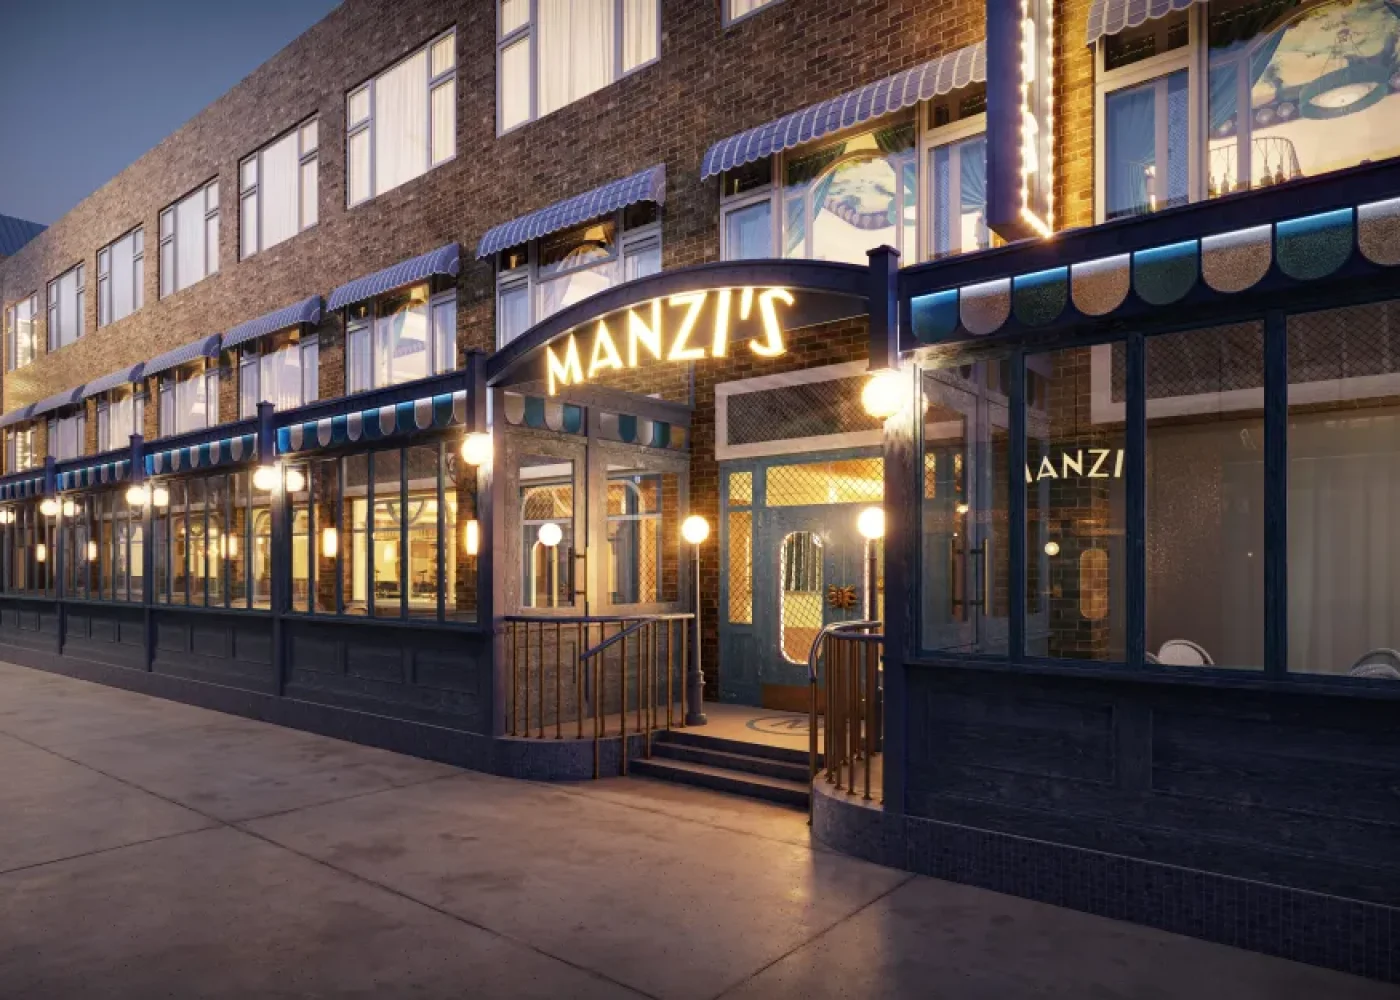 MANZI's